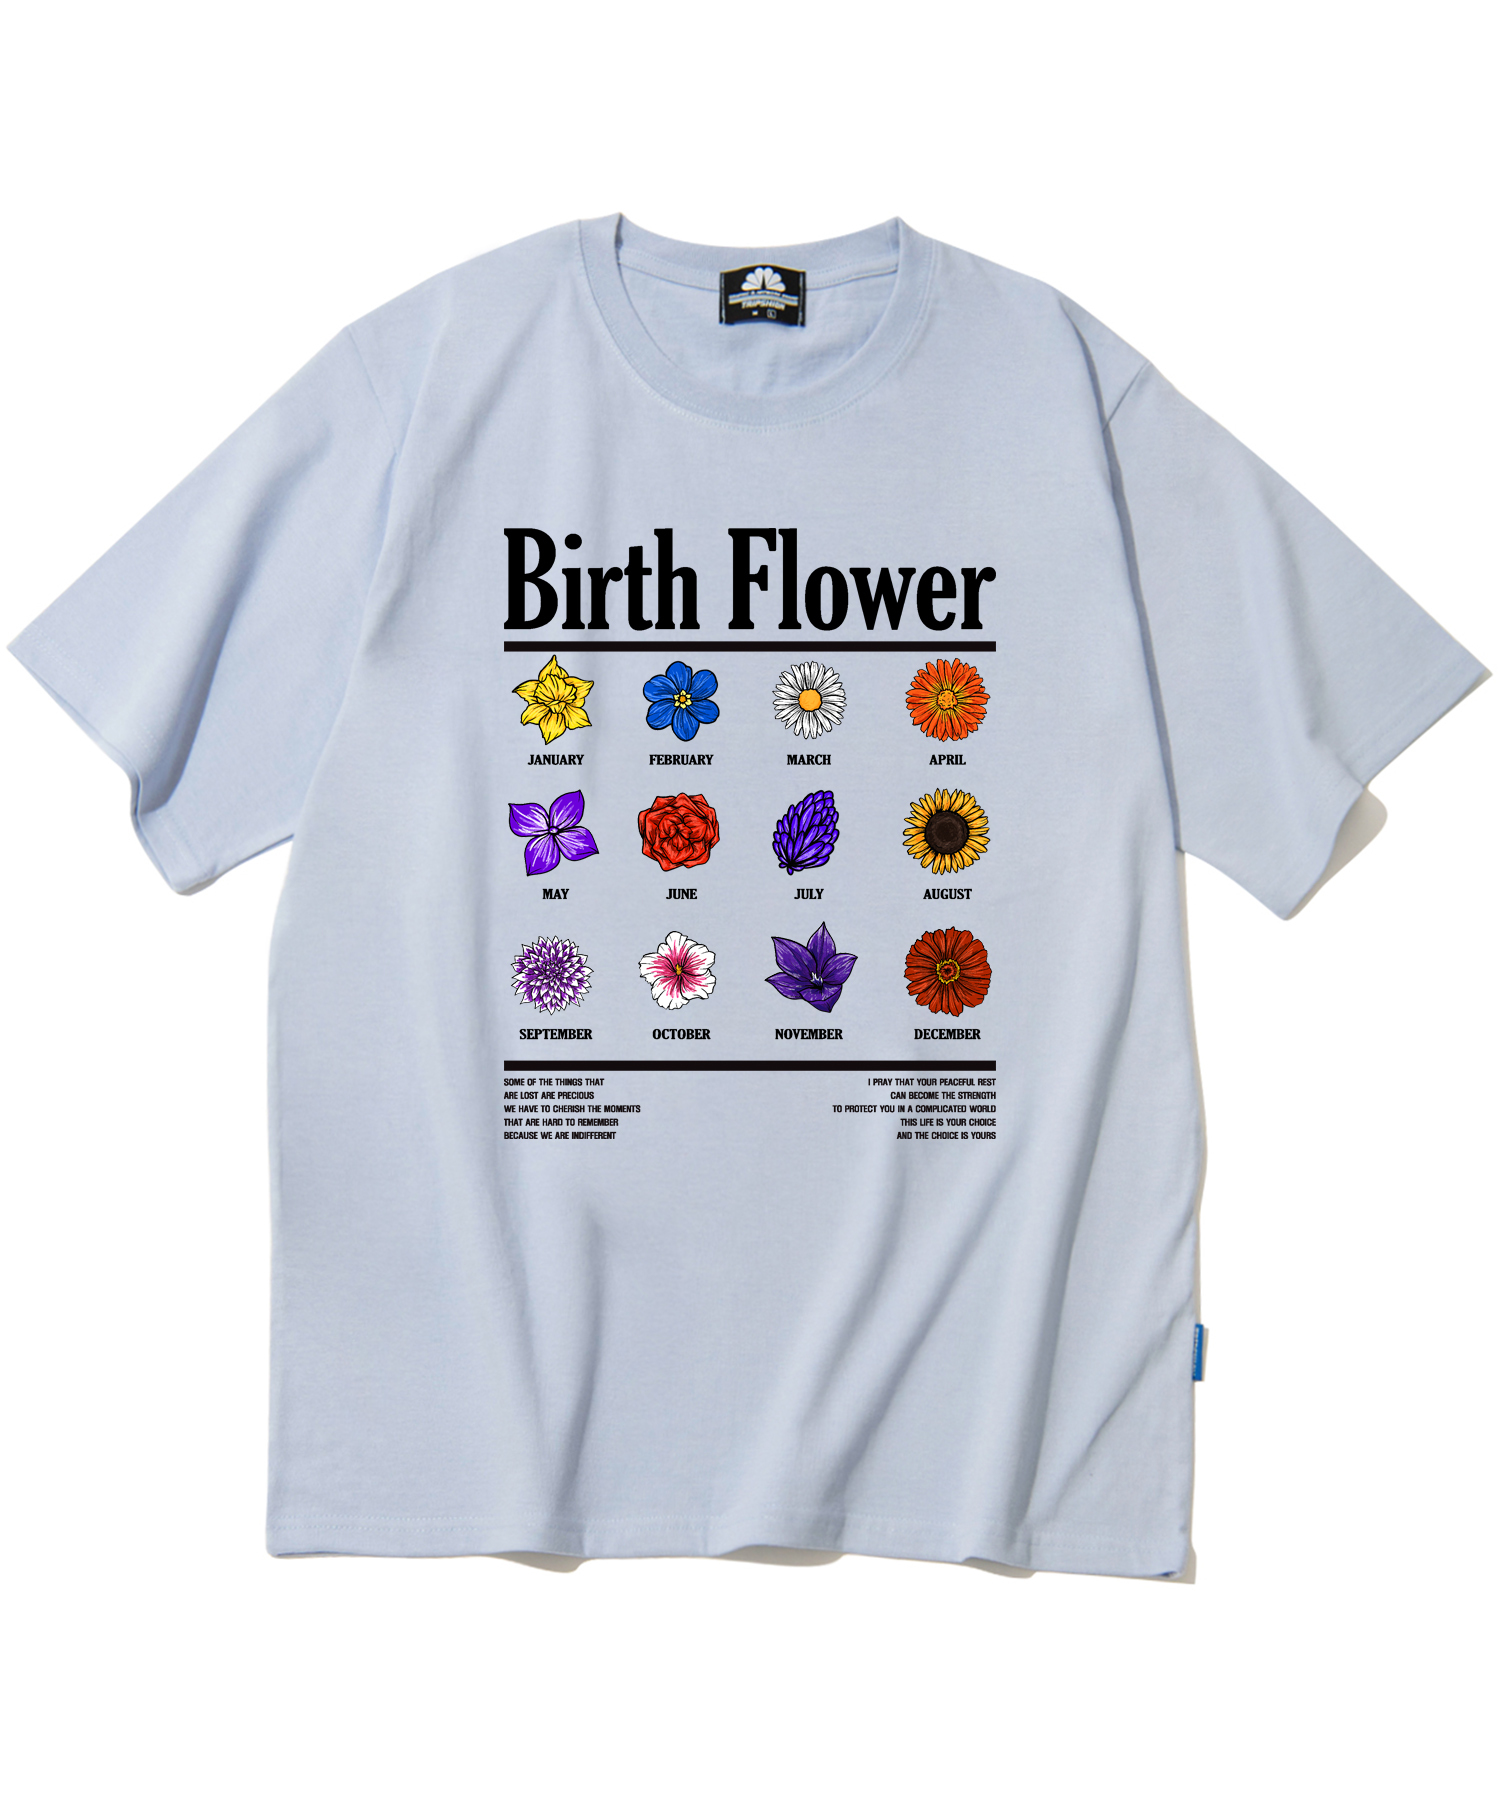 BIRTH FLOWER GRAPHIC T-SHIRTS - PURPLE